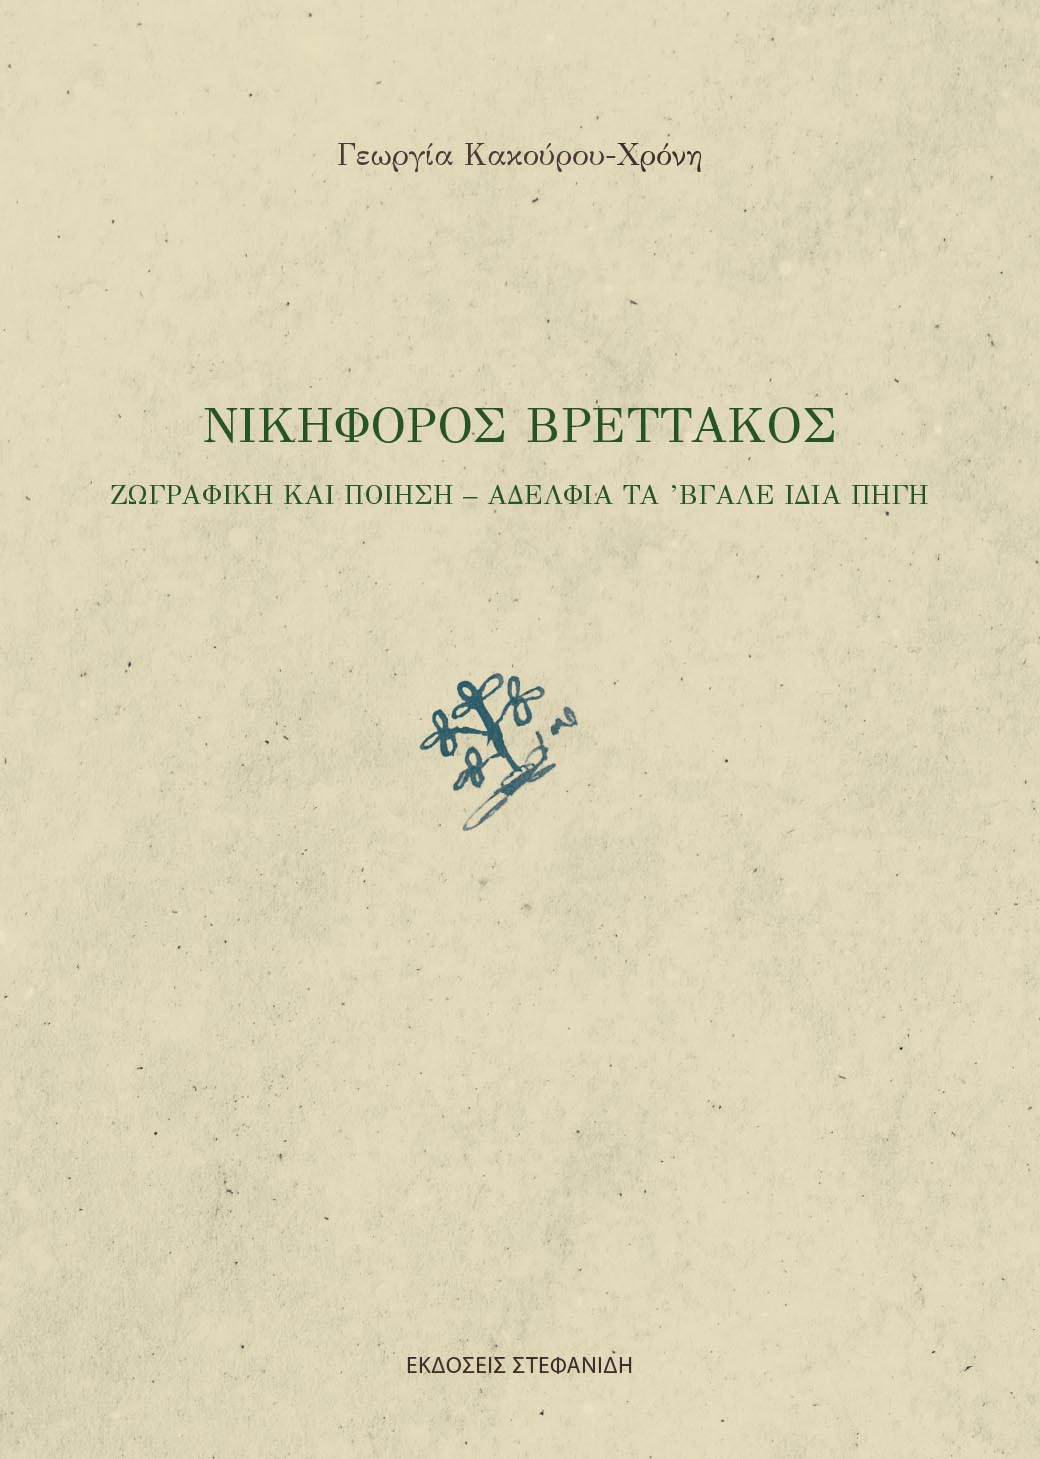 Νικηφόρος Βρεττάκος, Ζωγραφική και ποίηση – Αδέλφια τα ’βγαλε ίδια πηγή , Κακούρου - Χρόνη, Γεωργία, Στεφανίδη, 2022